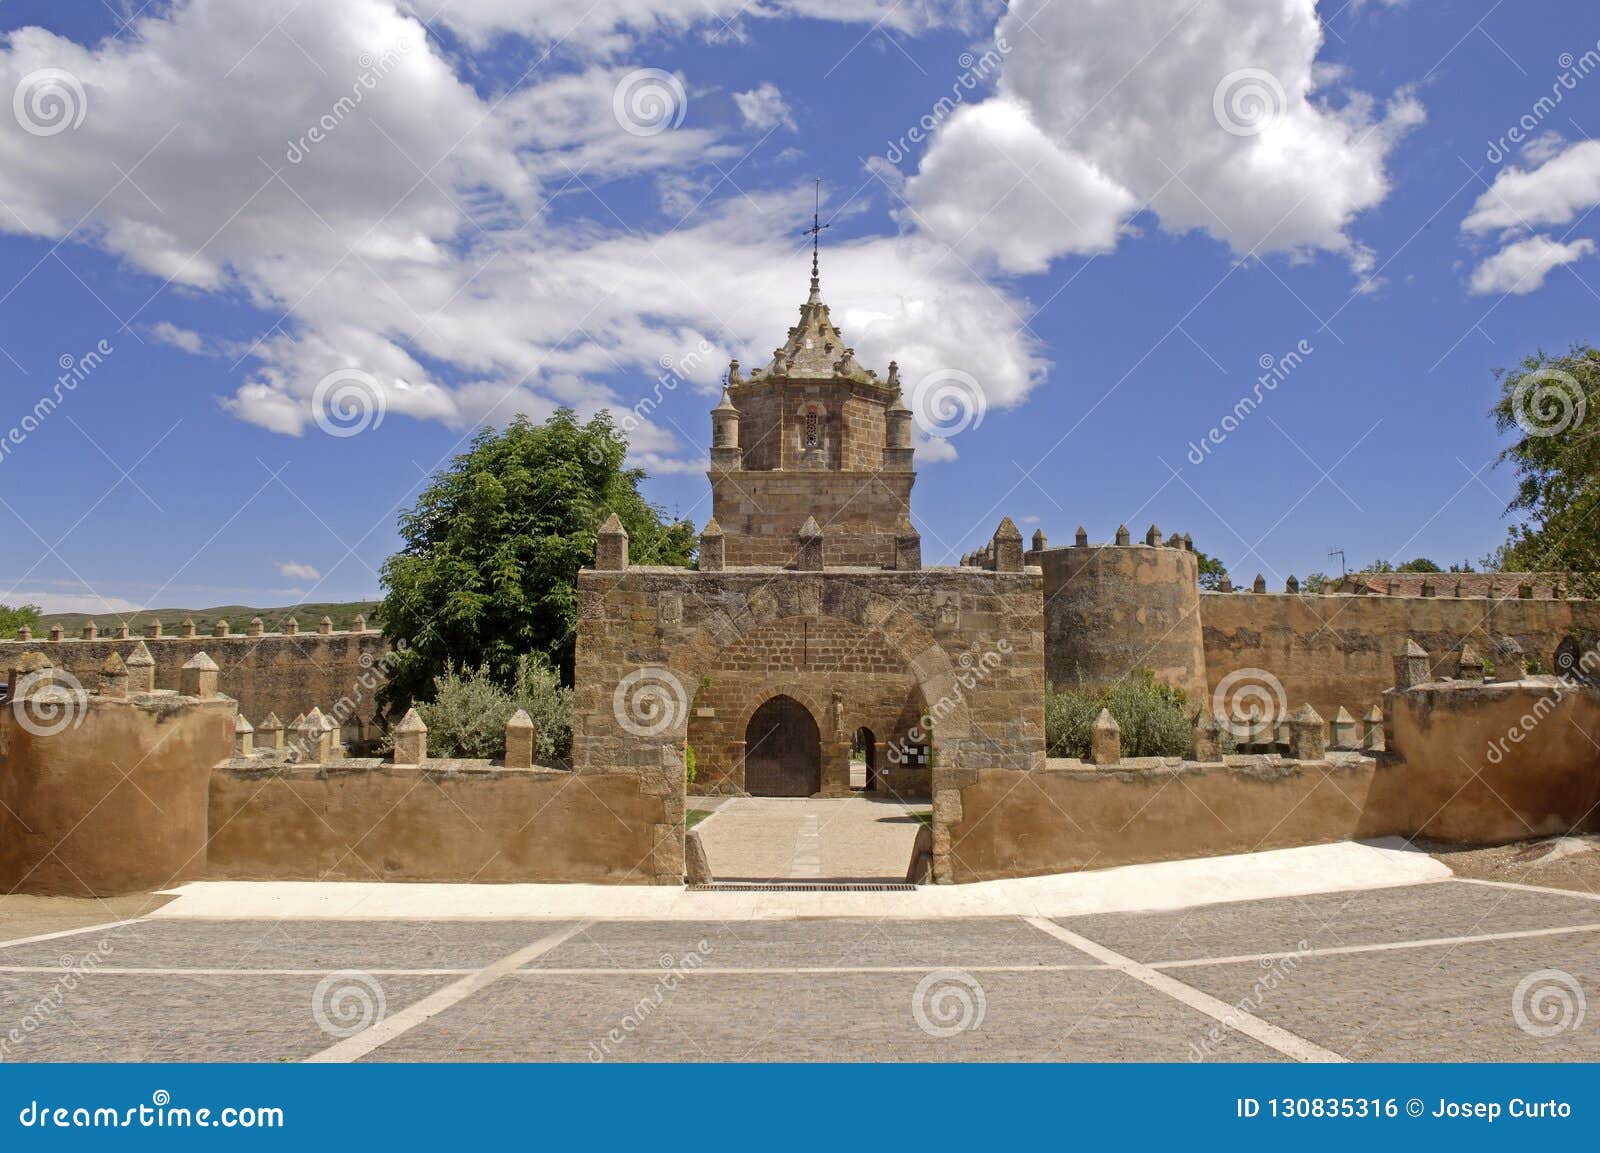 Real Monasterio De Santa Maria De Veruela Cistercense Siglo Xii